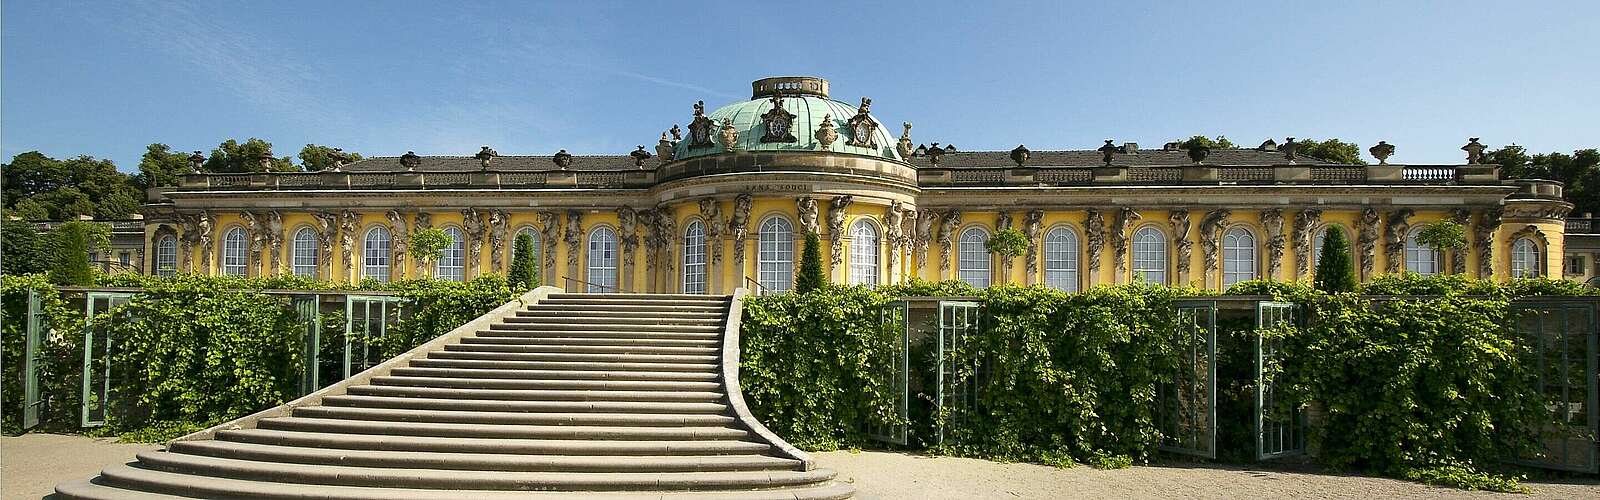 Schloss Sanssouci,
        
    

        Foto: TMB Tourismus-Marketing Brandenburg GmbH und SPSG/Leo Seidel